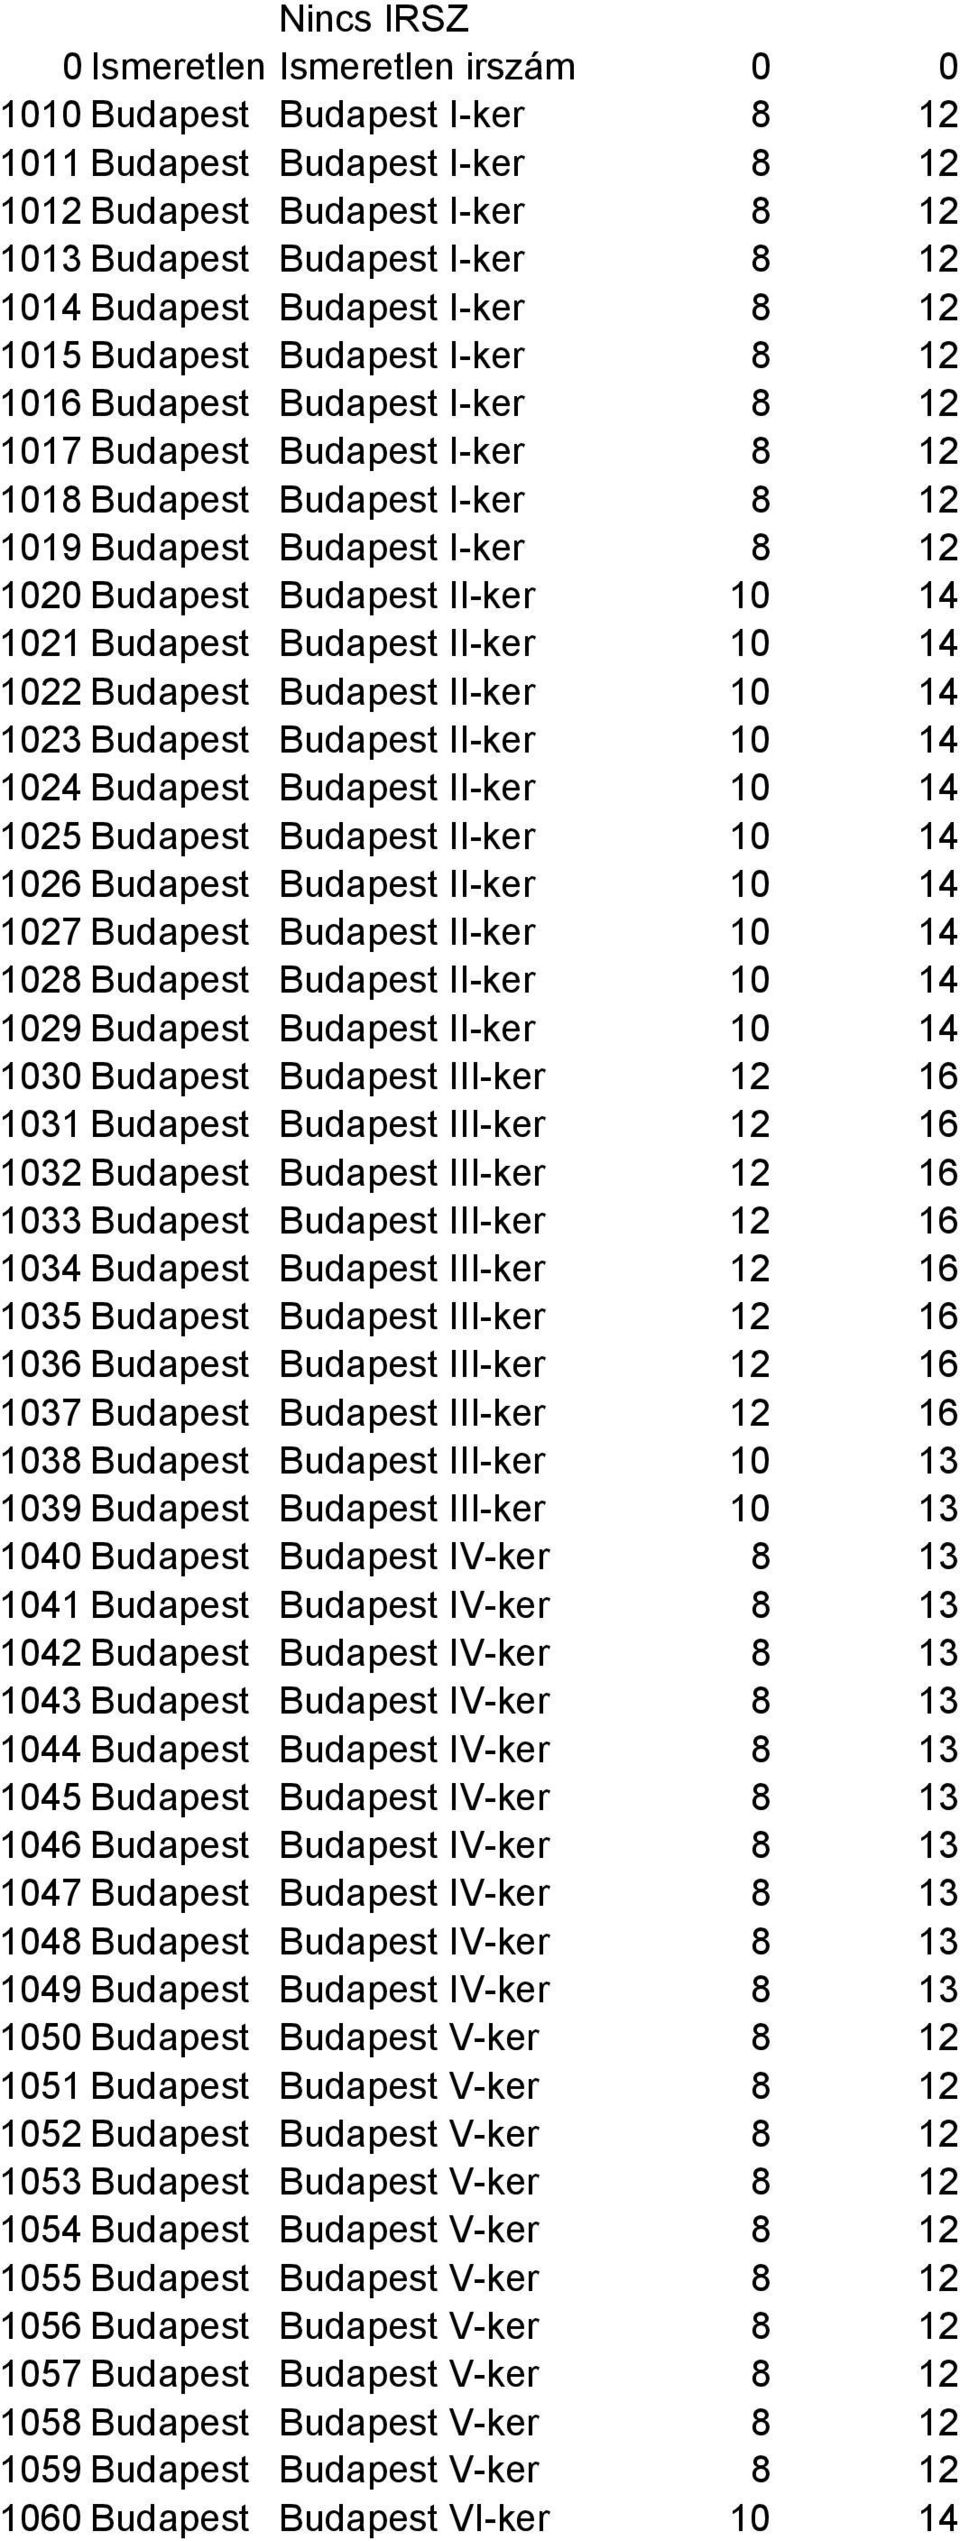 1020 Budapest Budapest II-ker 10 14 1021 Budapest Budapest II-ker 10 14 1022 Budapest Budapest II-ker 10 14 1023 Budapest Budapest II-ker 10 14 1024 Budapest Budapest II-ker 10 14 1025 Budapest